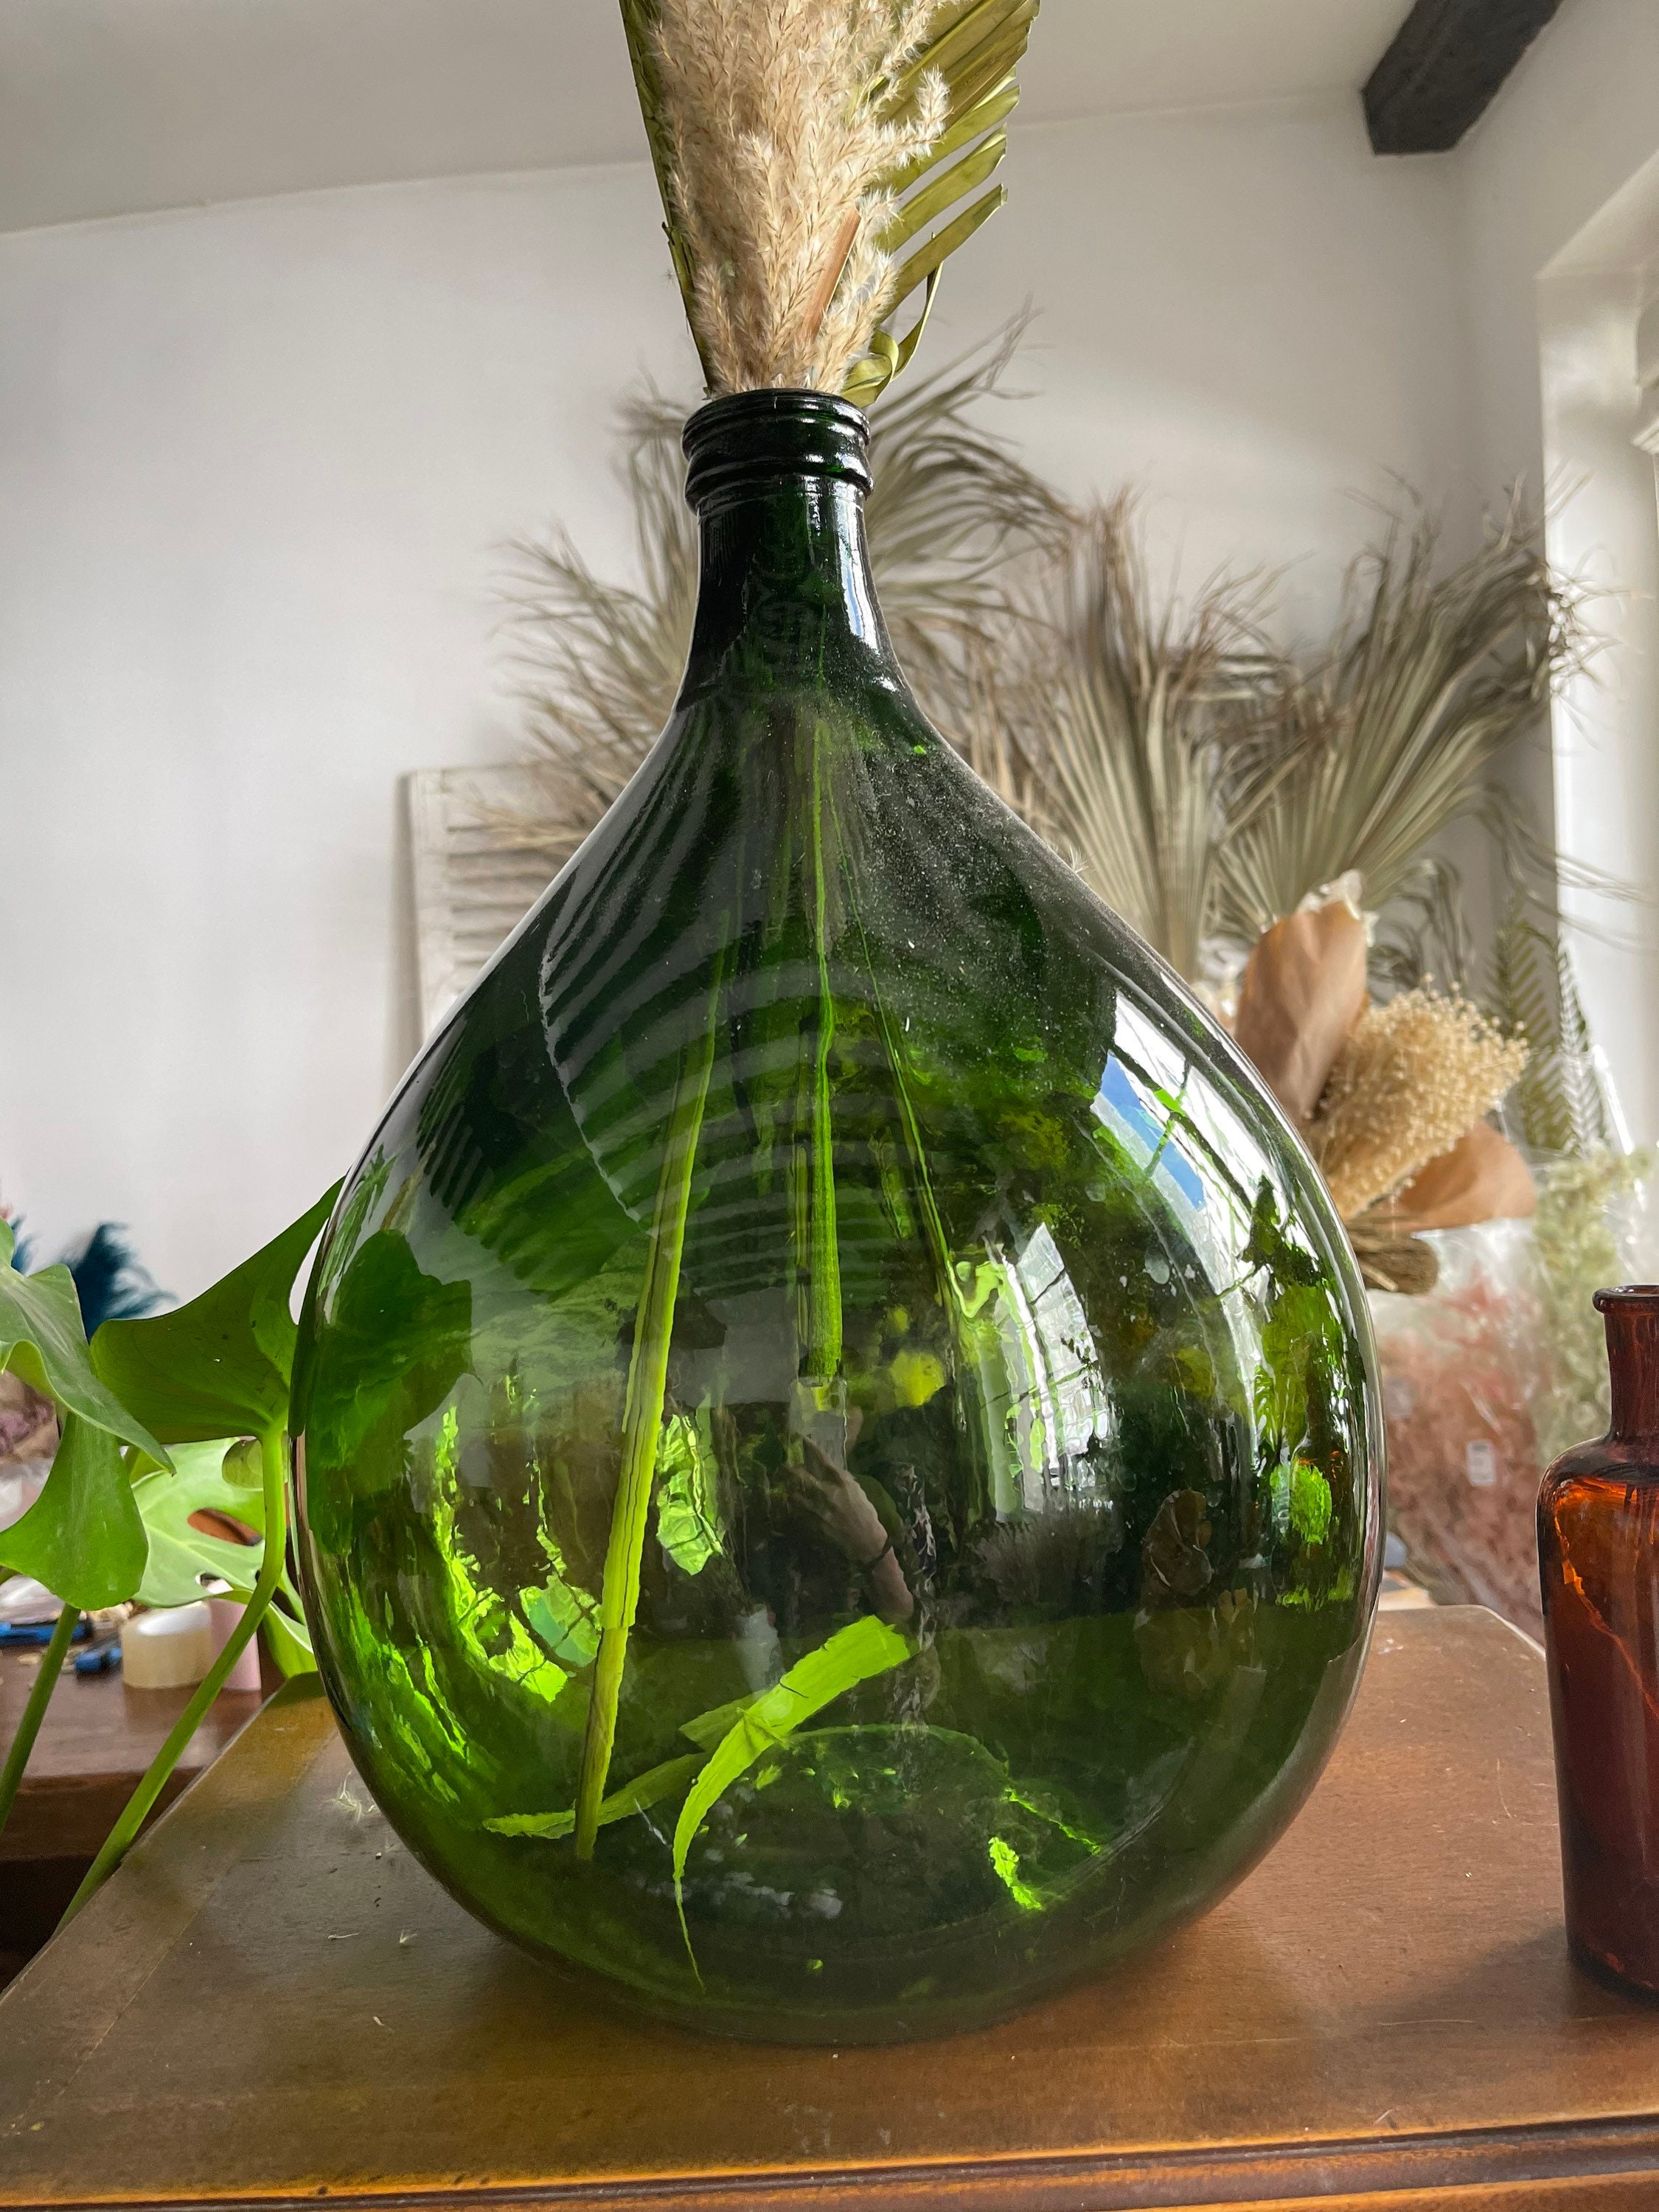 Dame jeanne bouteille jarre ancienne en verre vert / vase décoration  ancienne / Holy10 France -  France